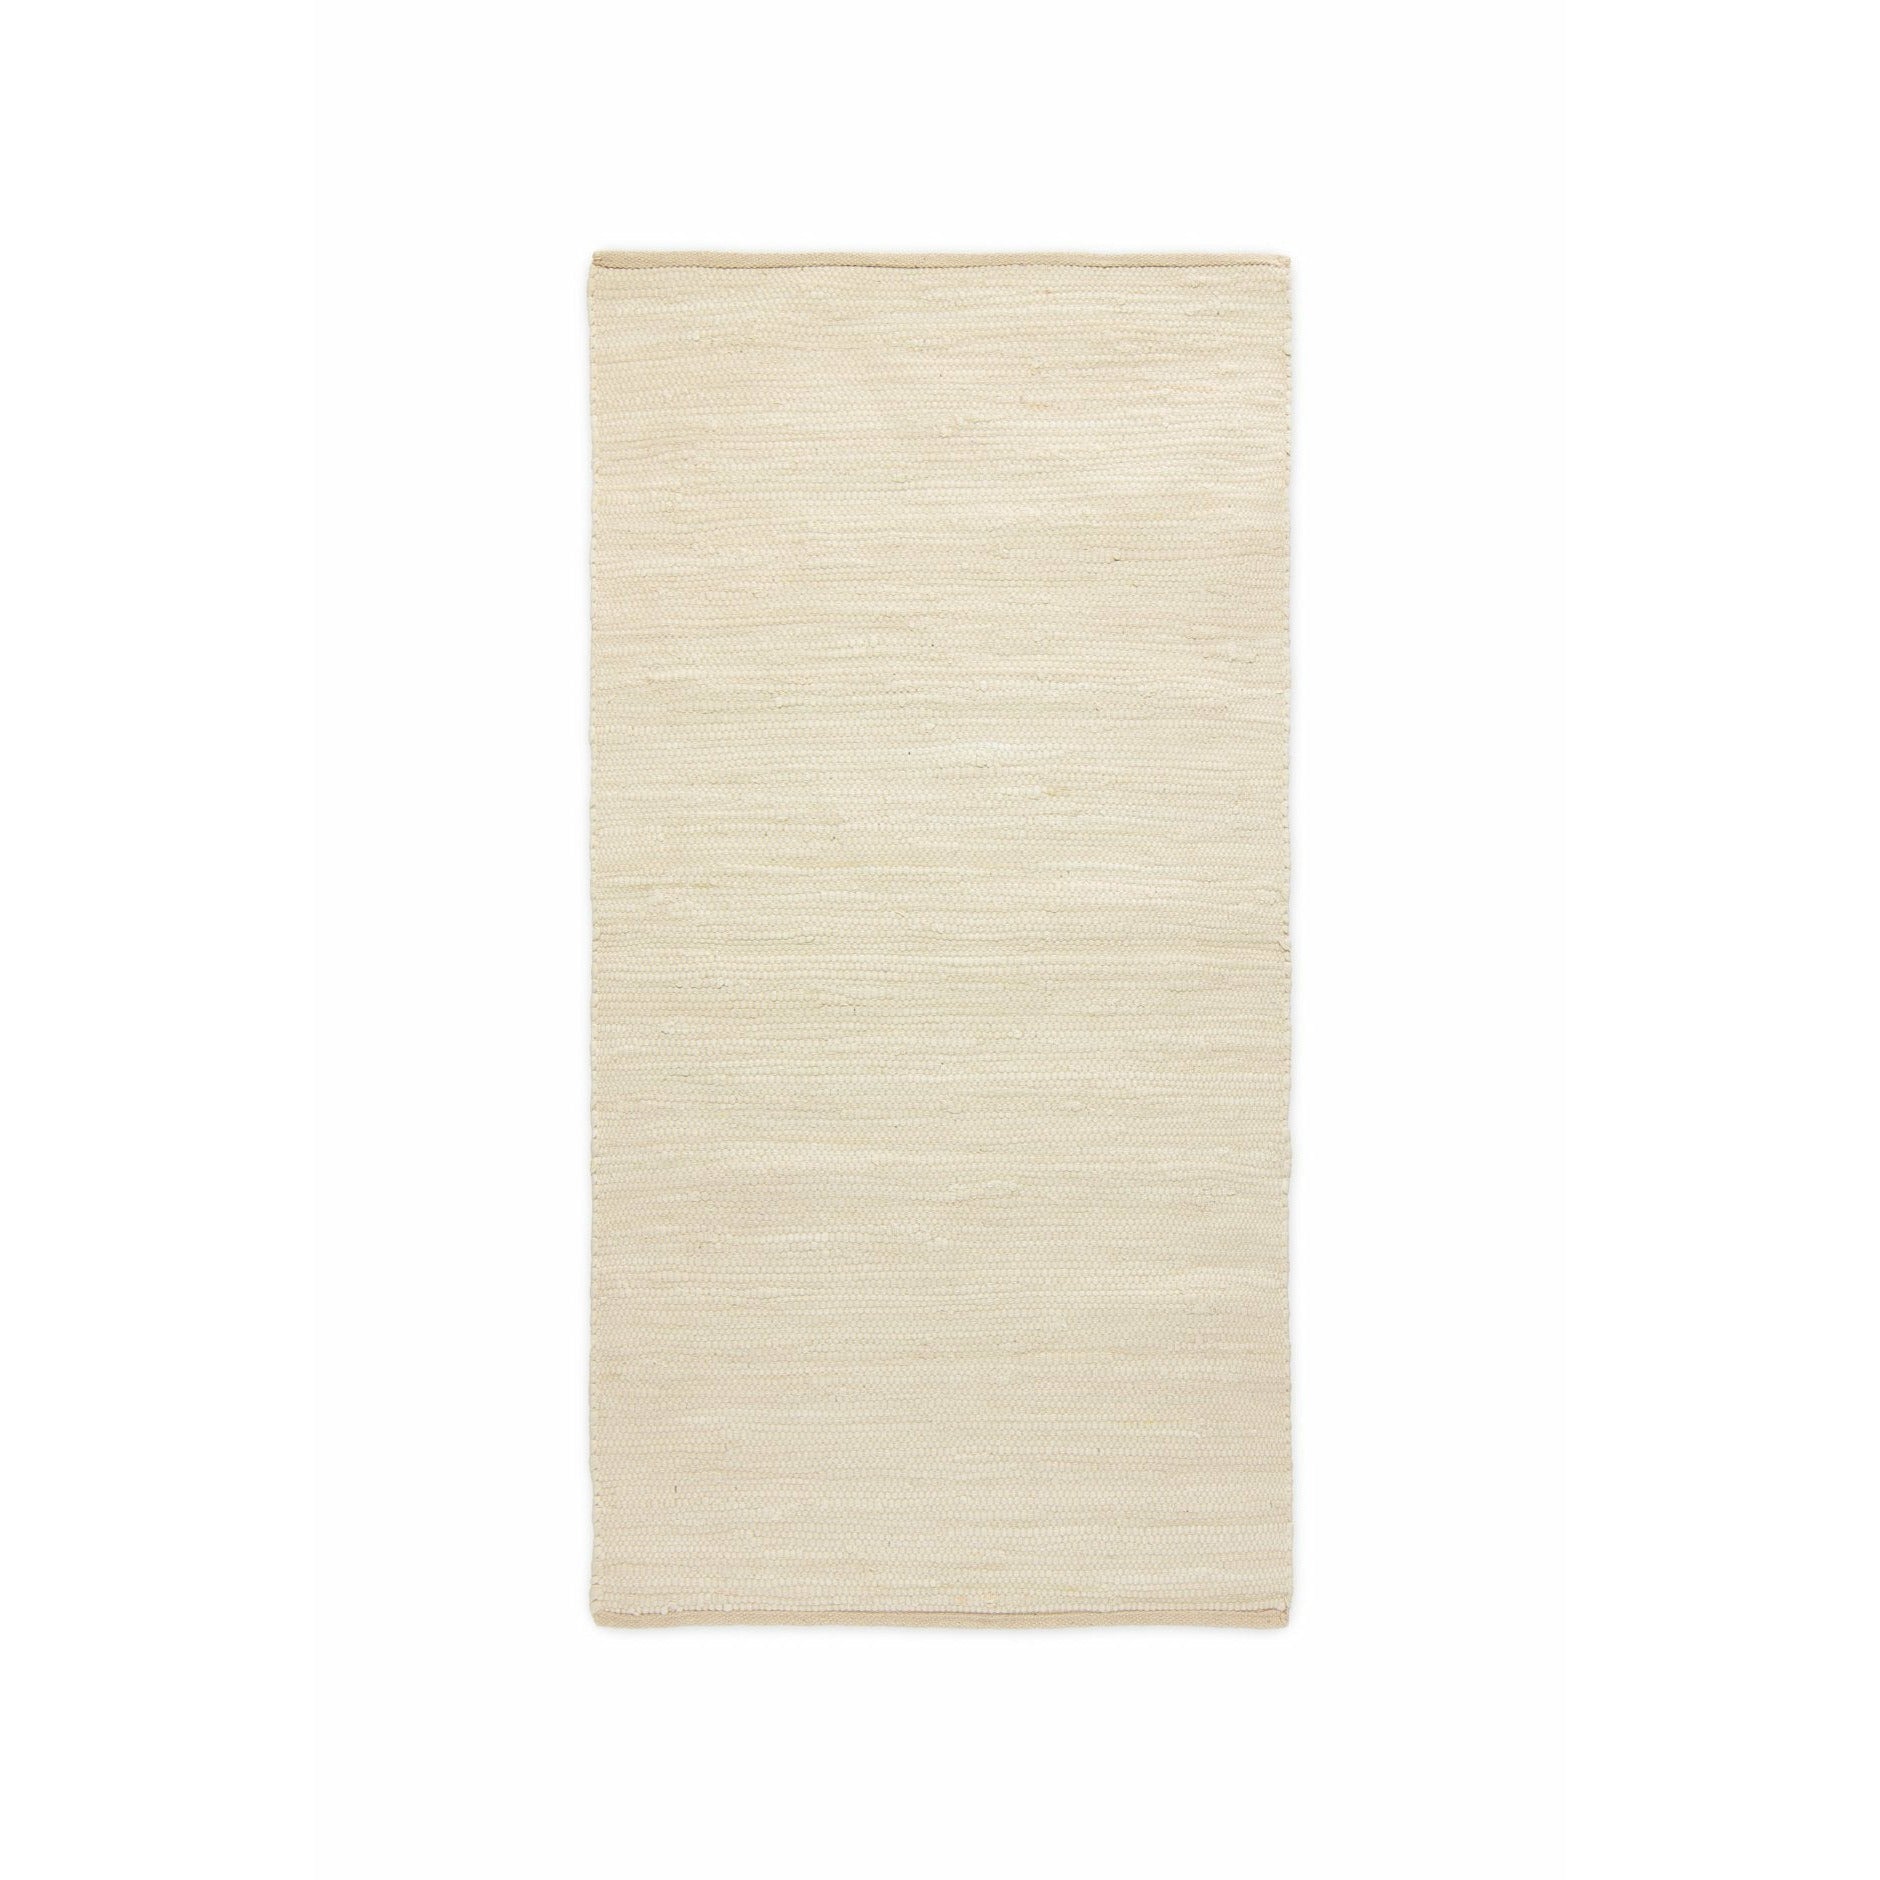 Rug Solid Katoen Tapijtwoestijn Wit, 60 x 90 cm